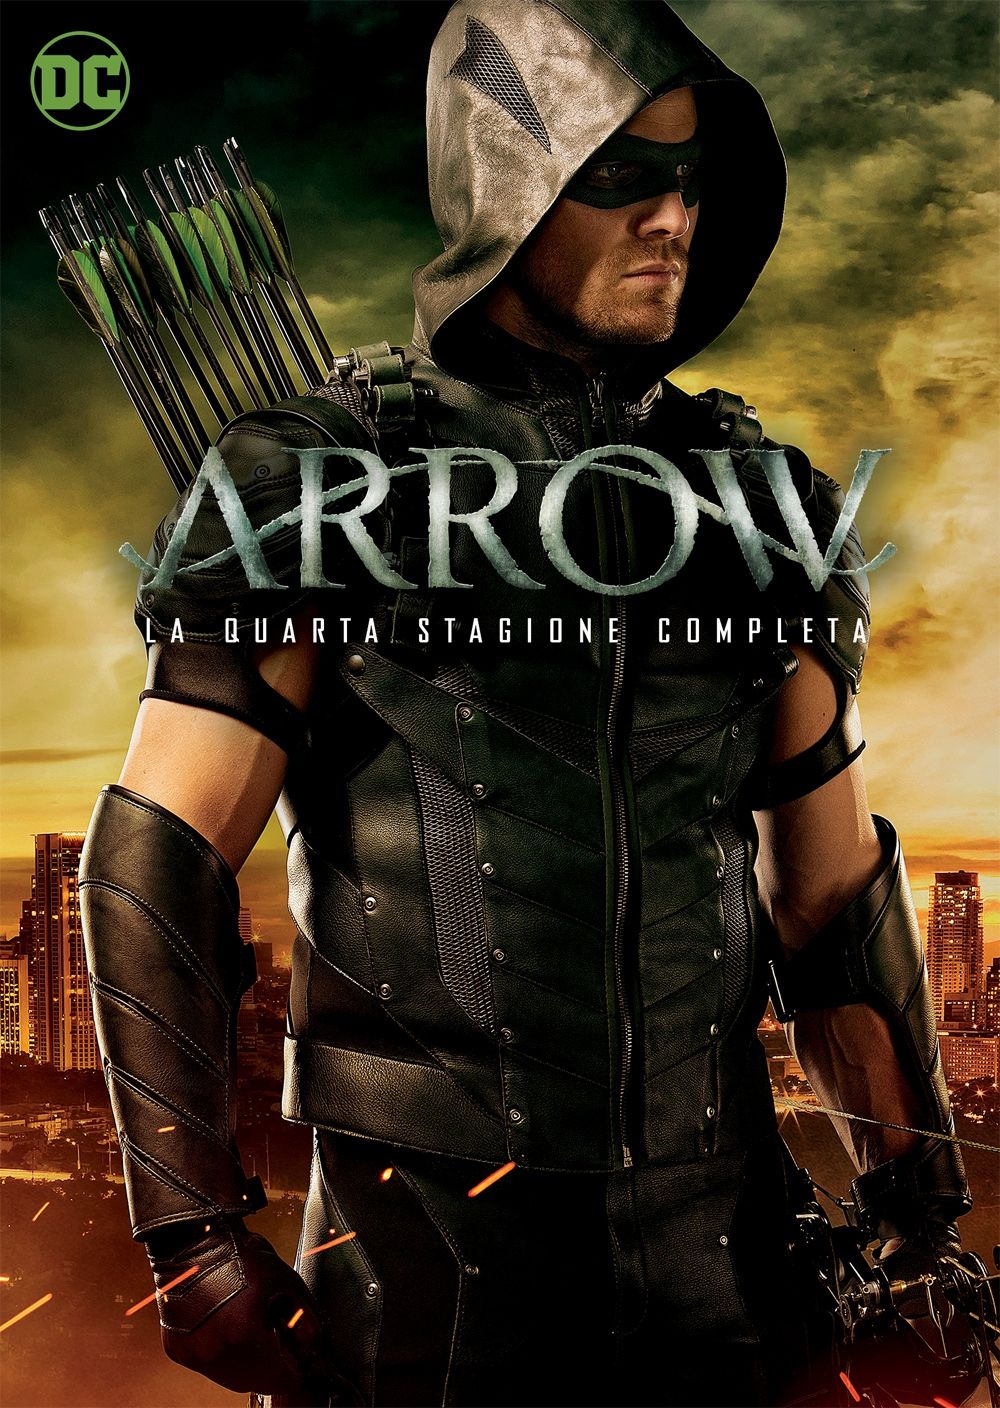 La quarta stagione di Arrow dal 17 Novembre in Home Video!